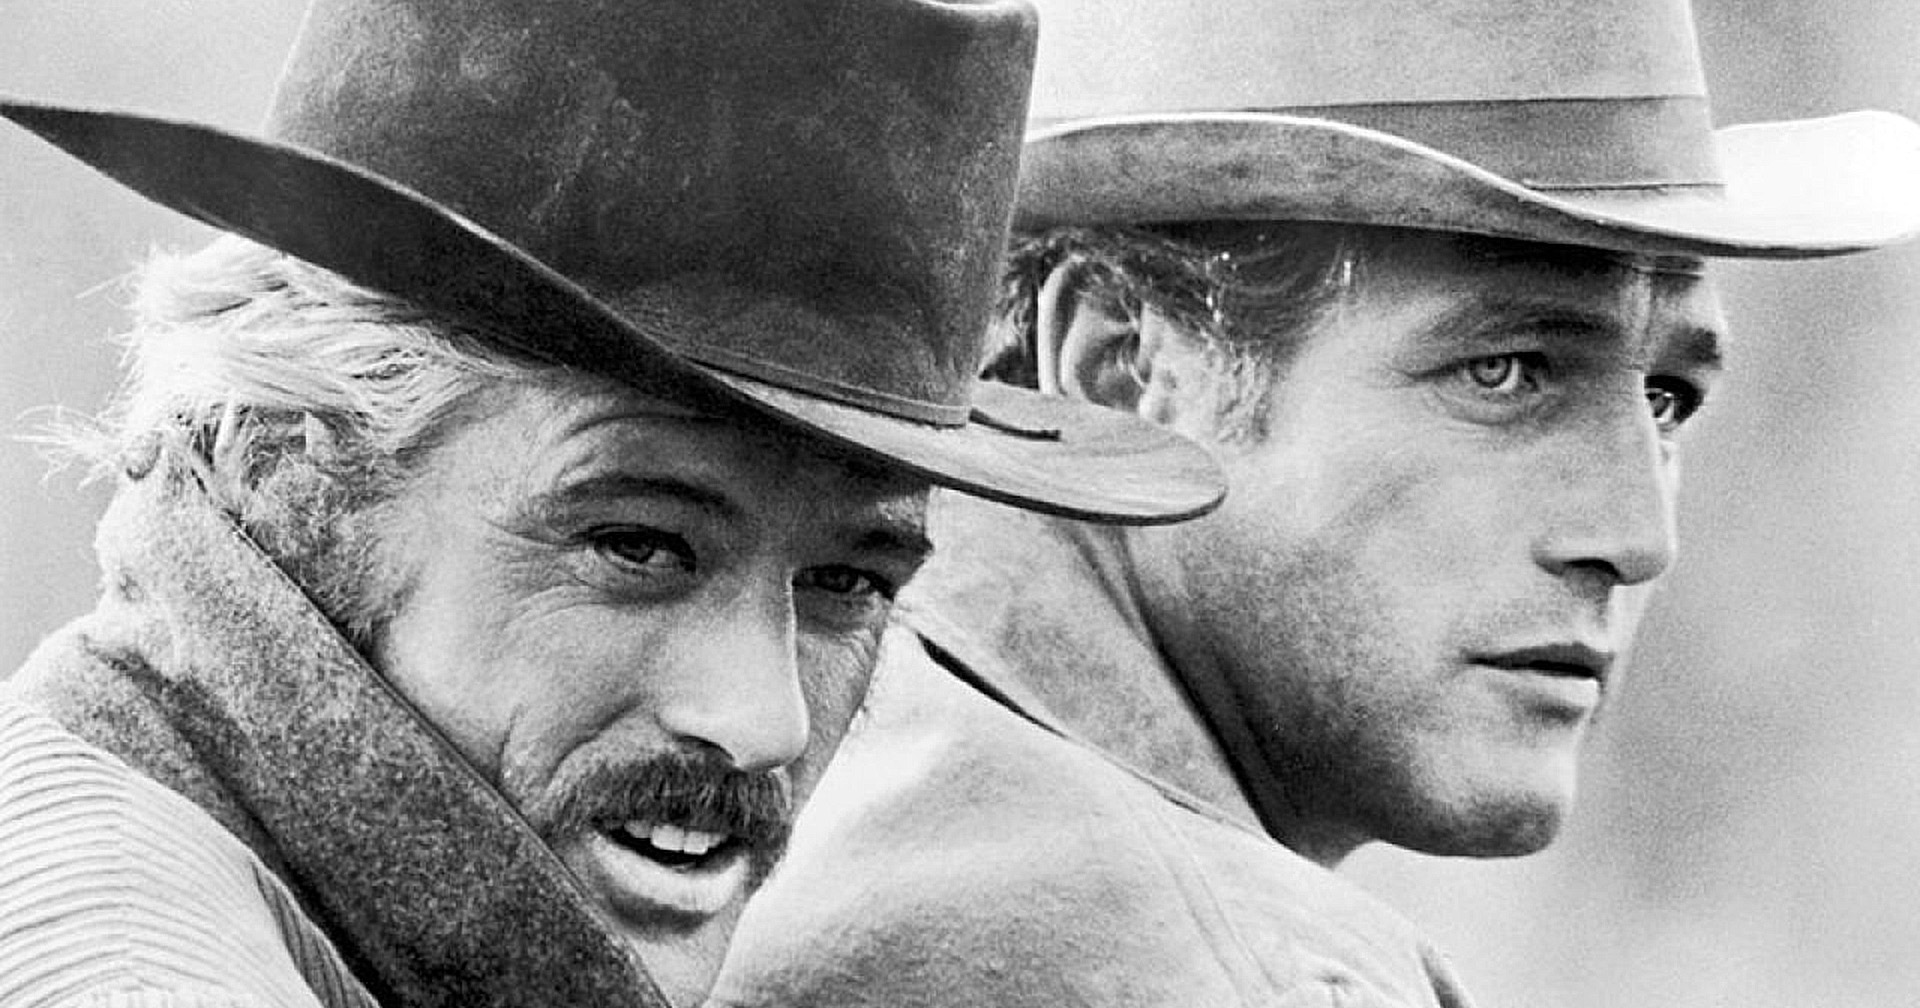 ภาพยนตร์คาวบอยในตำนาน ‘Butch Cassidy & The Sundance Kid’ กำลังถูกสร้างเป็นซีรีส์